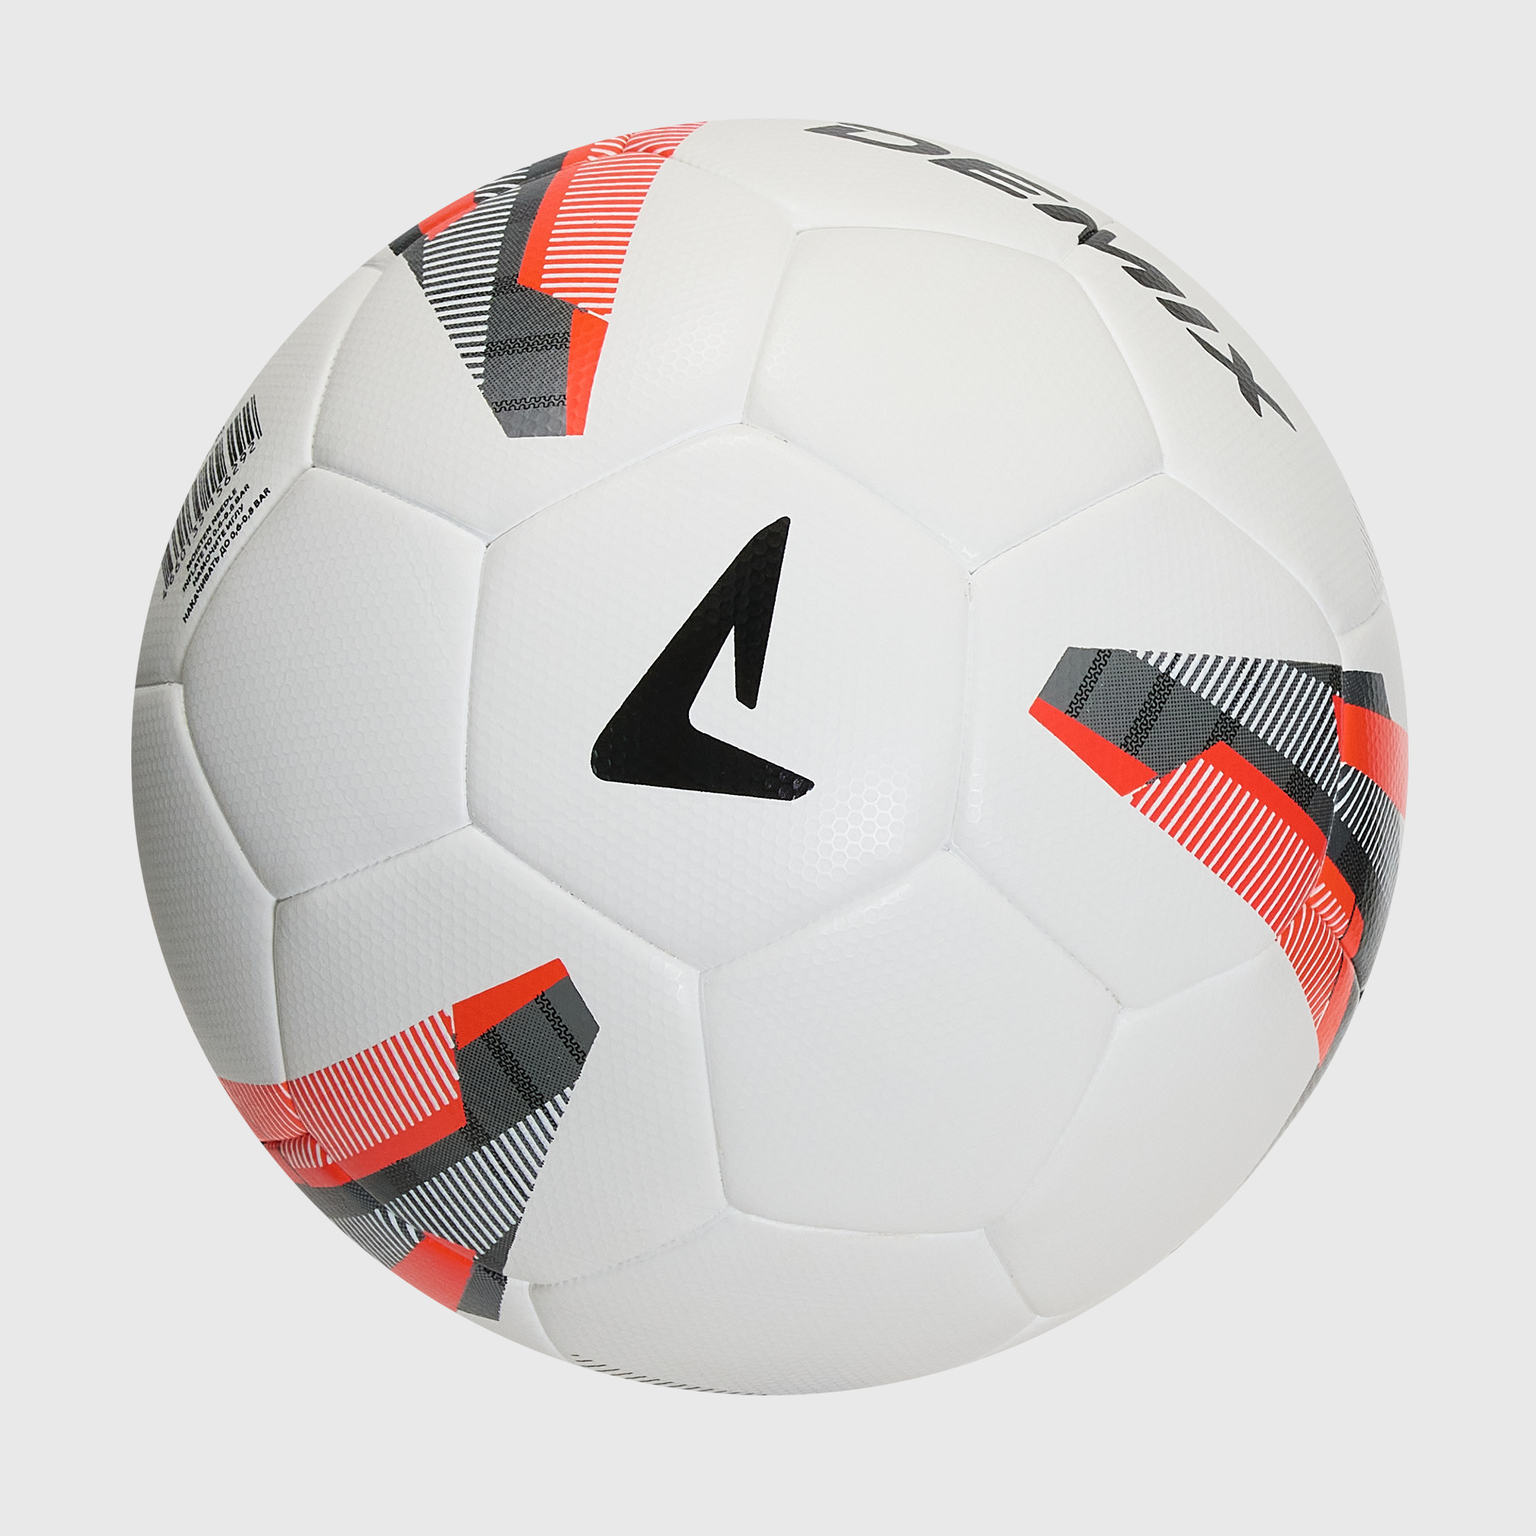 Футбольный мяч Demix Fifa Quality 114519-00